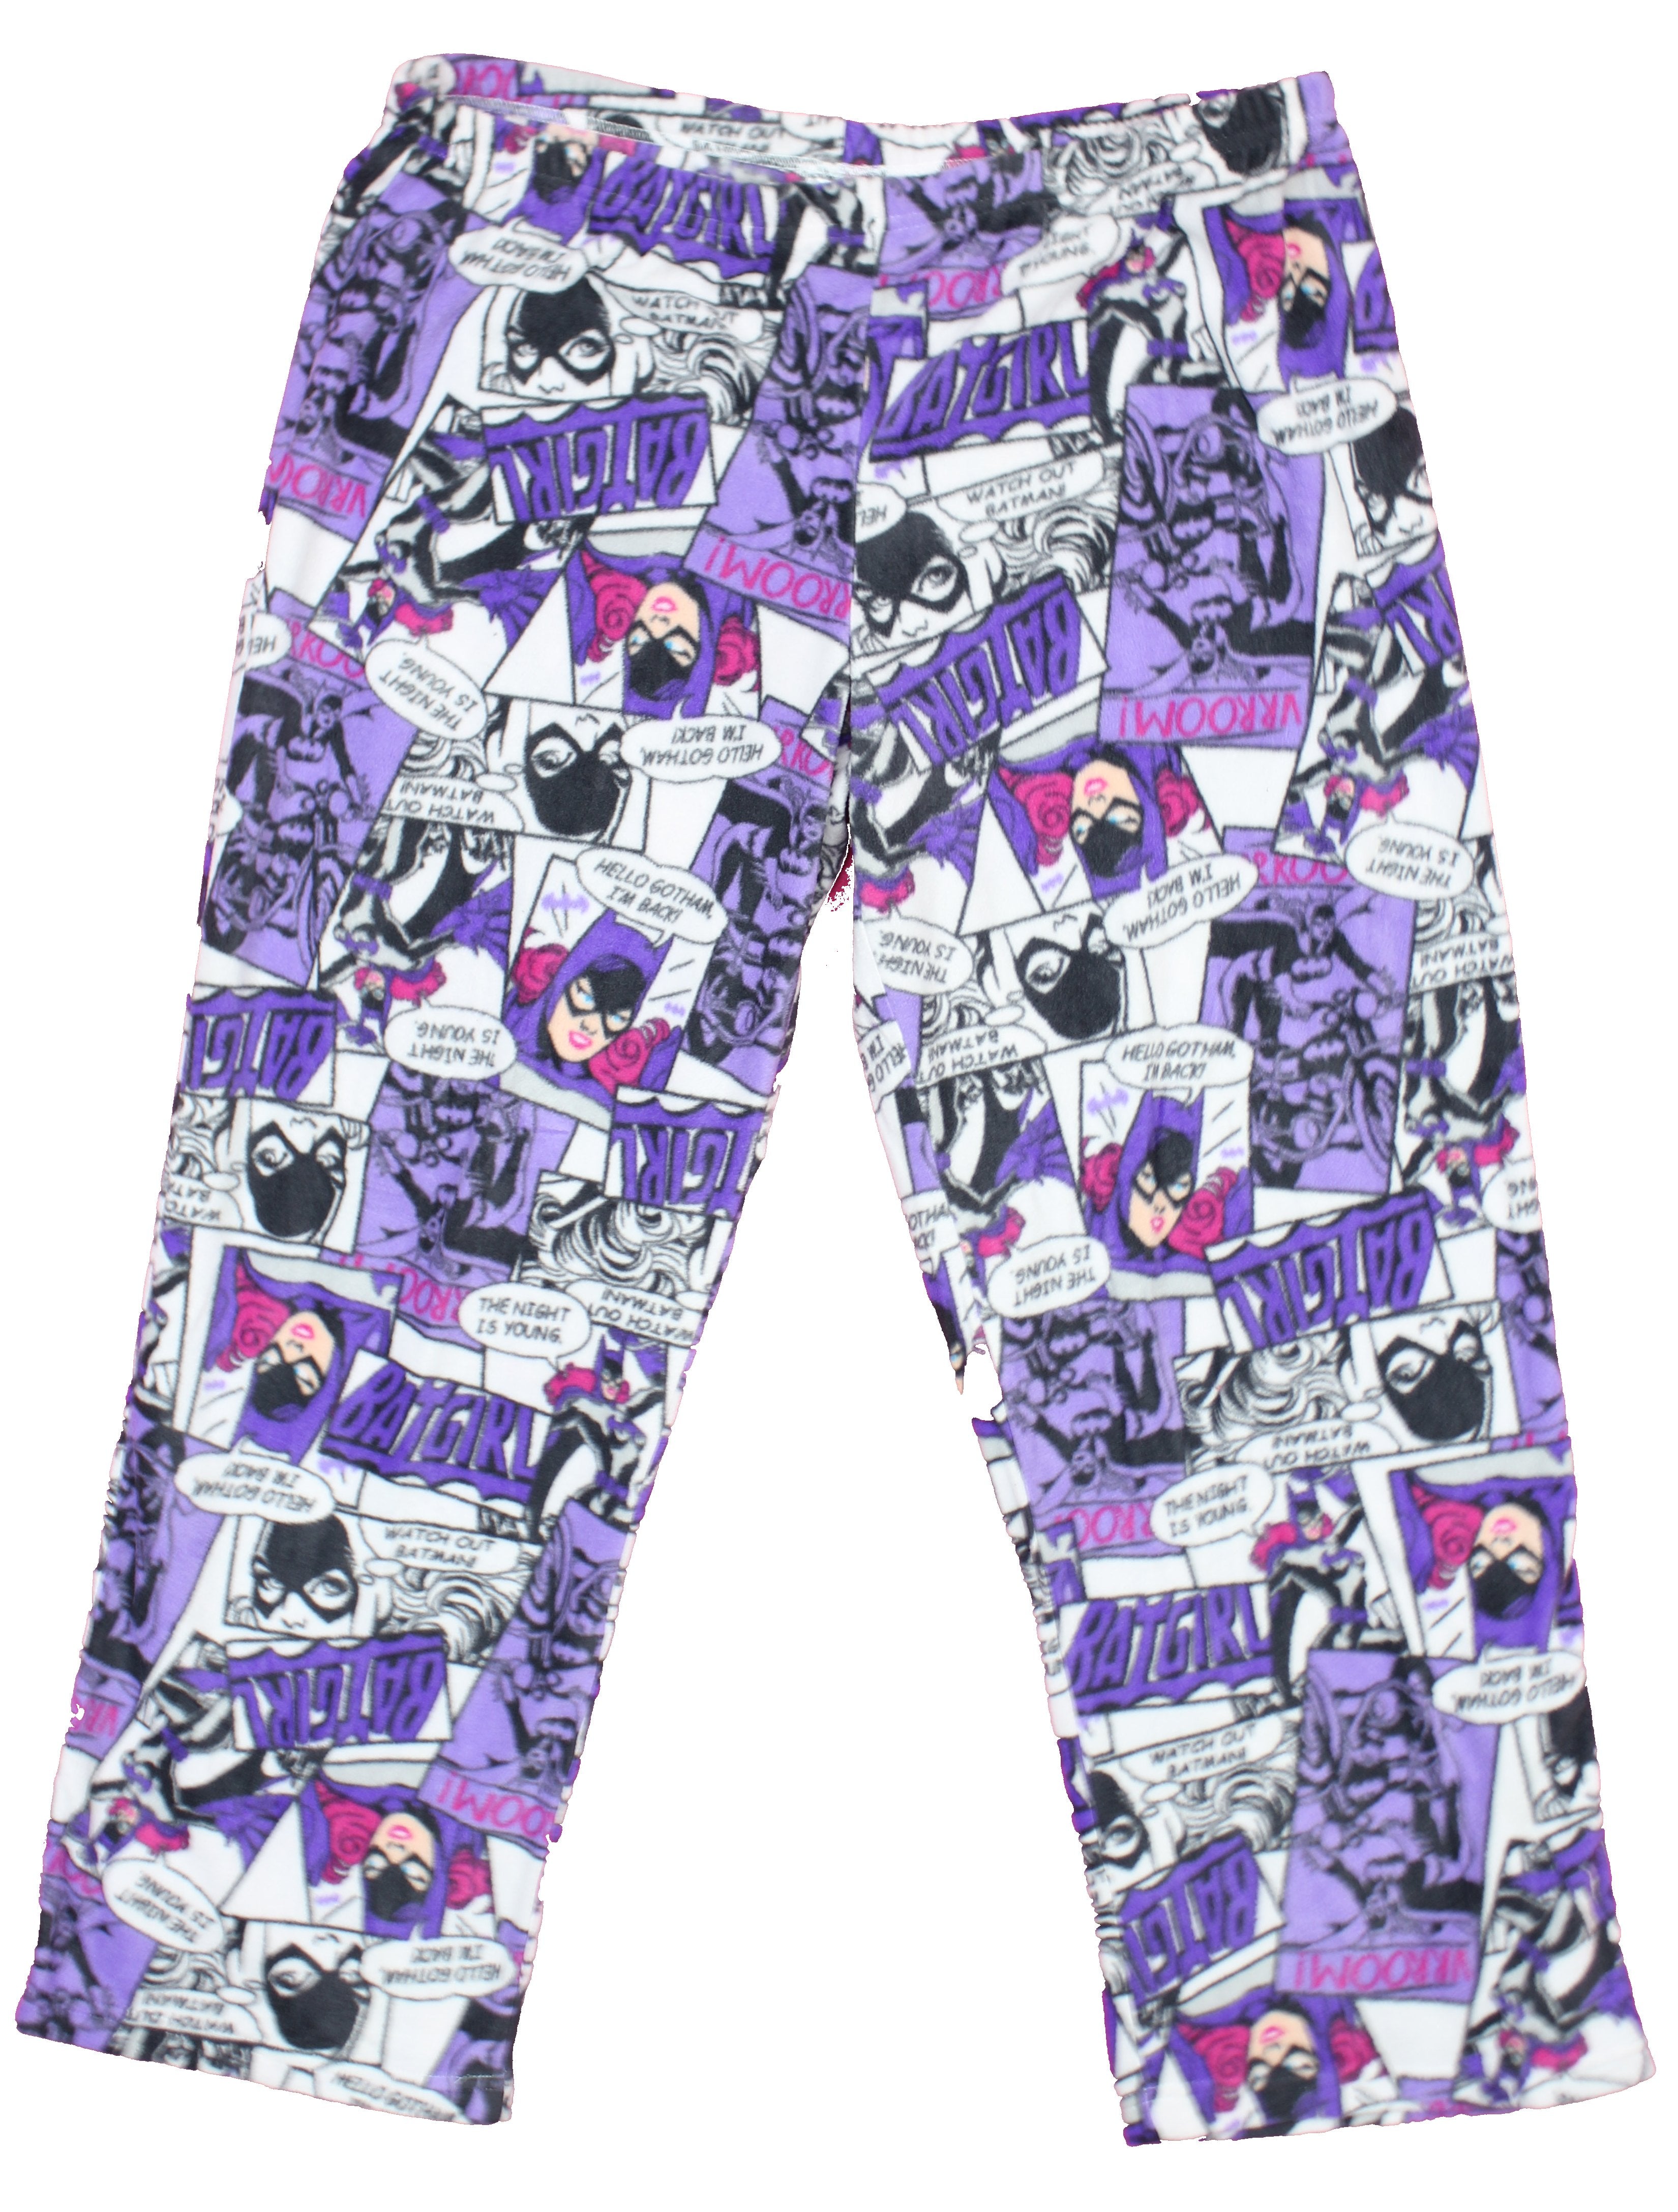 DC Batgirl Comic Panels All Over Print Microfleece Lounge Pajama Pants